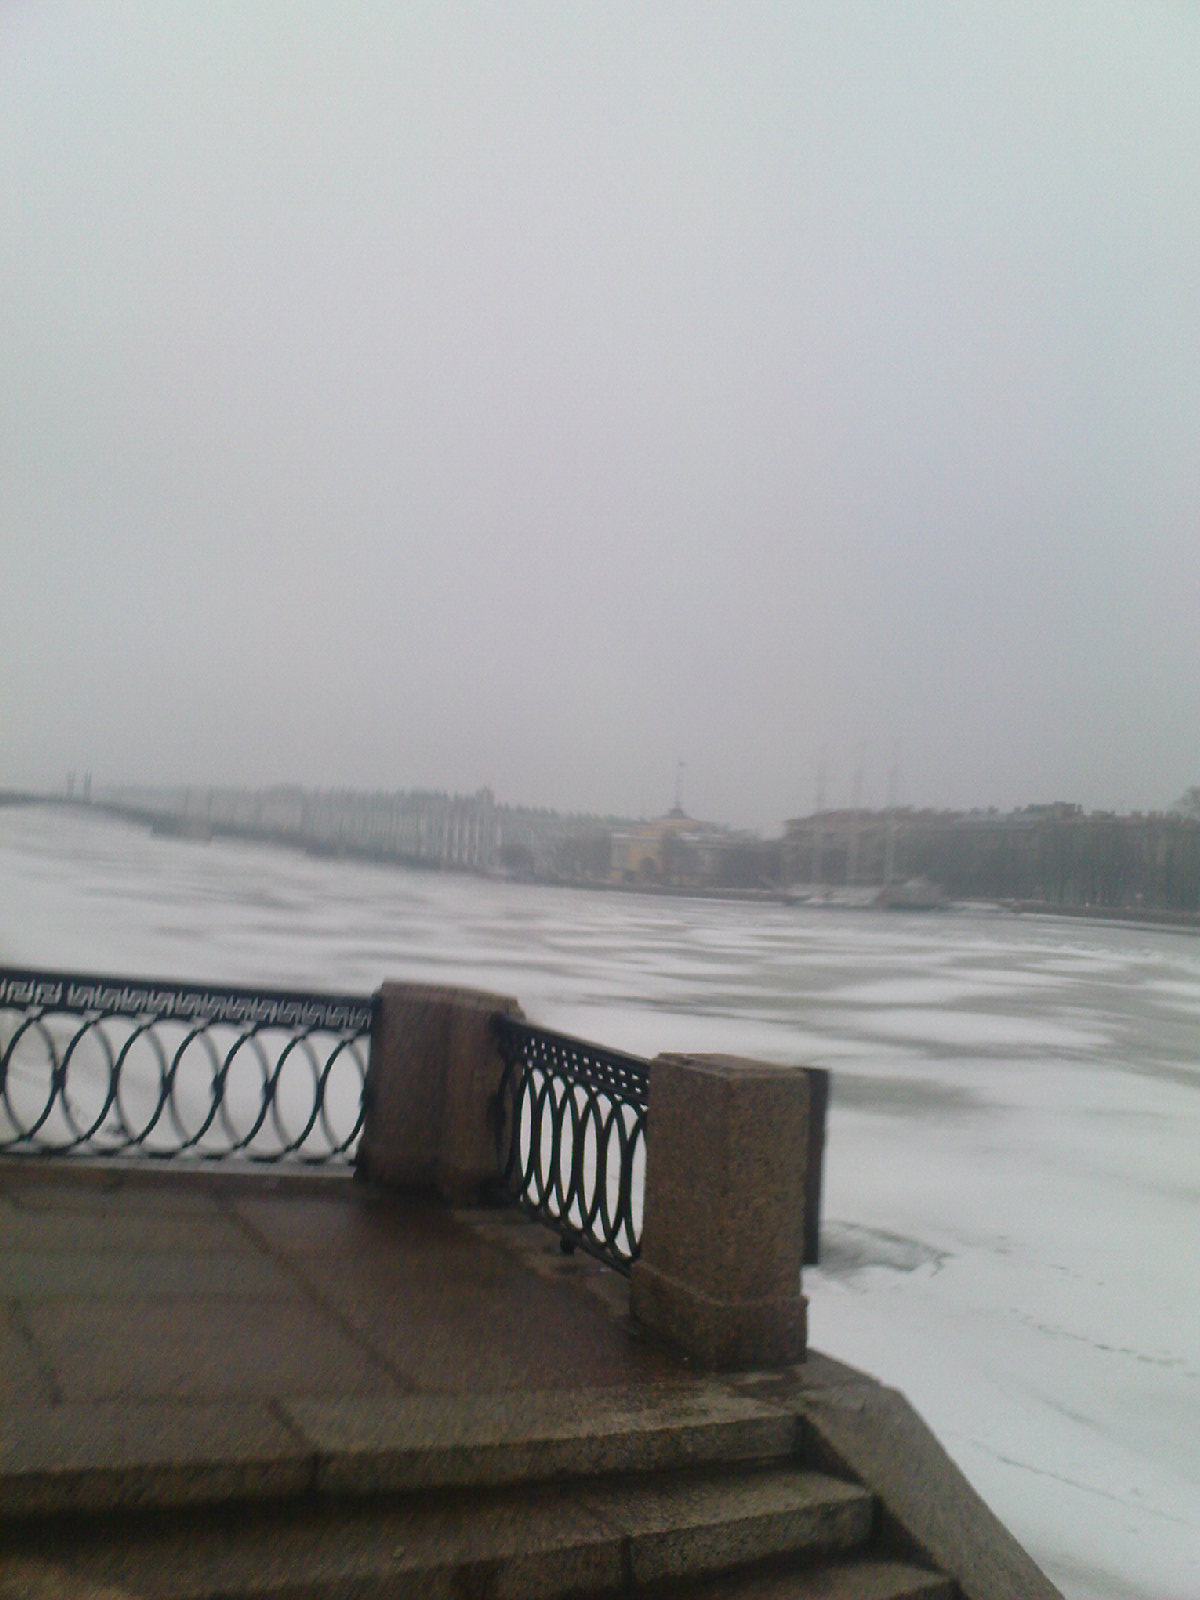 Петербург. Вид туманный Зимний Дворец и Адмиралтейство со стороны Университетской набережной. Весна 2010